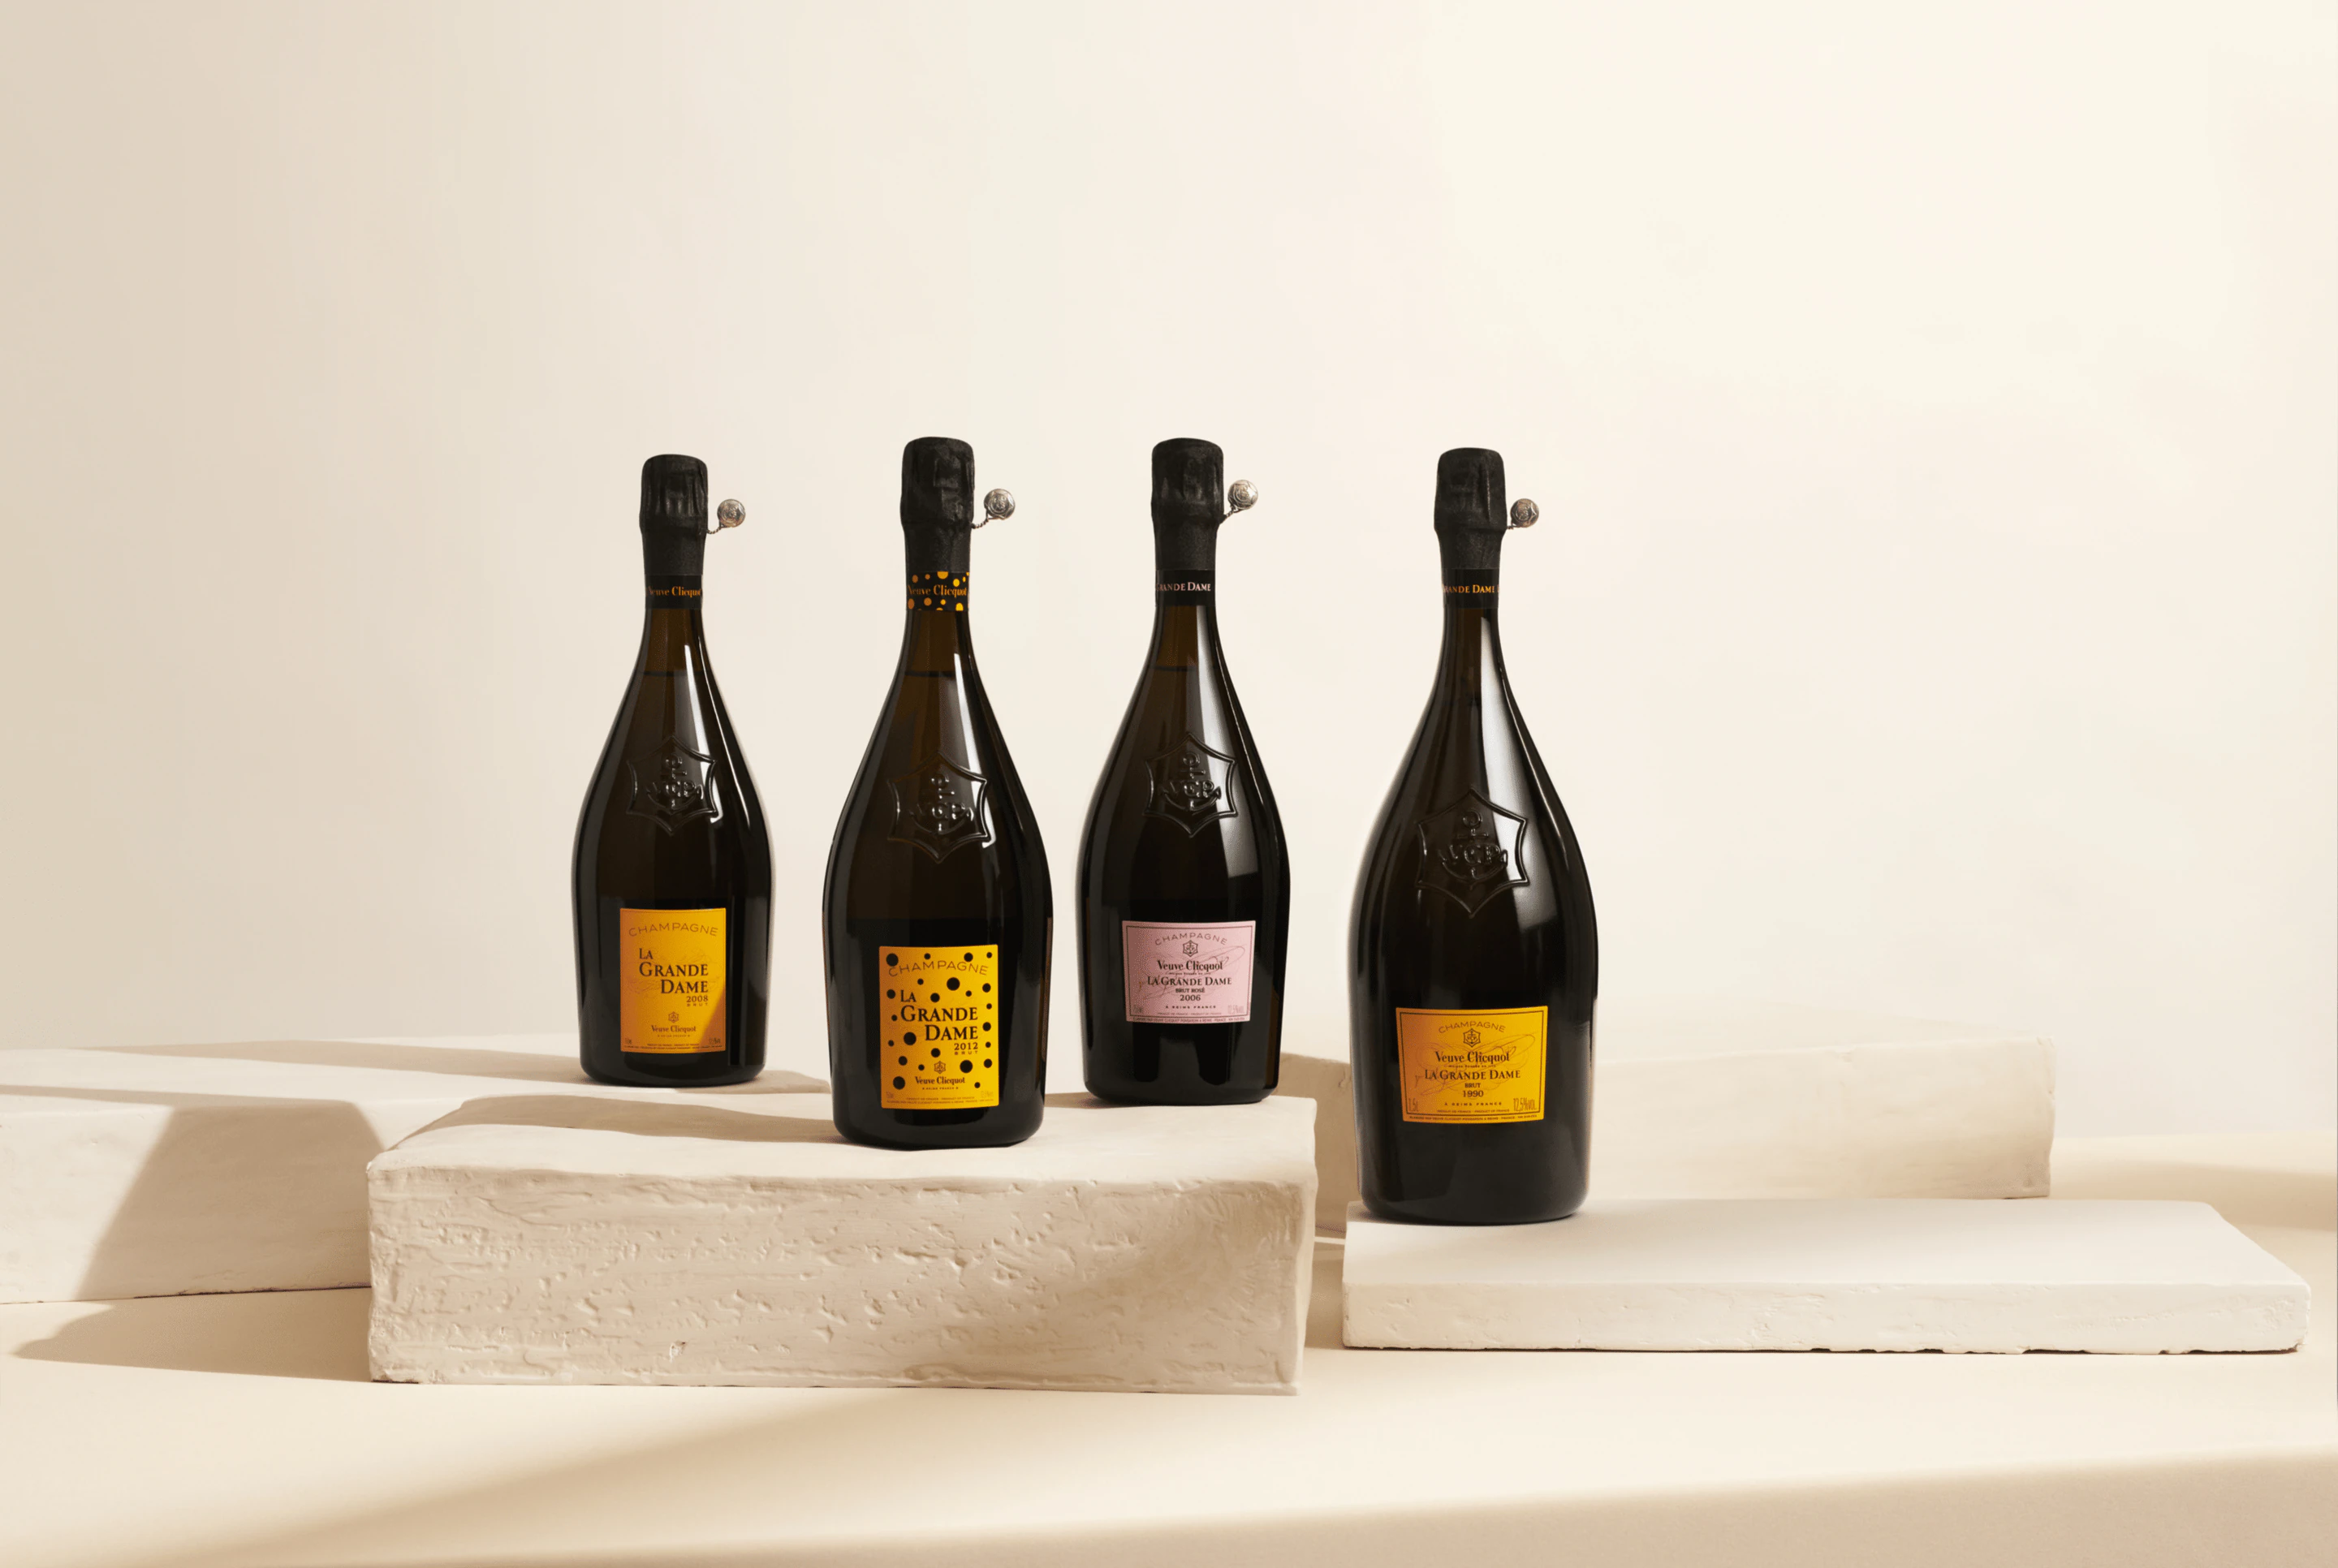 Veuve Clicquot La Grande Dame Brut Rosé Champagne 2006 | Exquisite Wine & Alcohol Gift Delivery Toronto Canada | Vyno